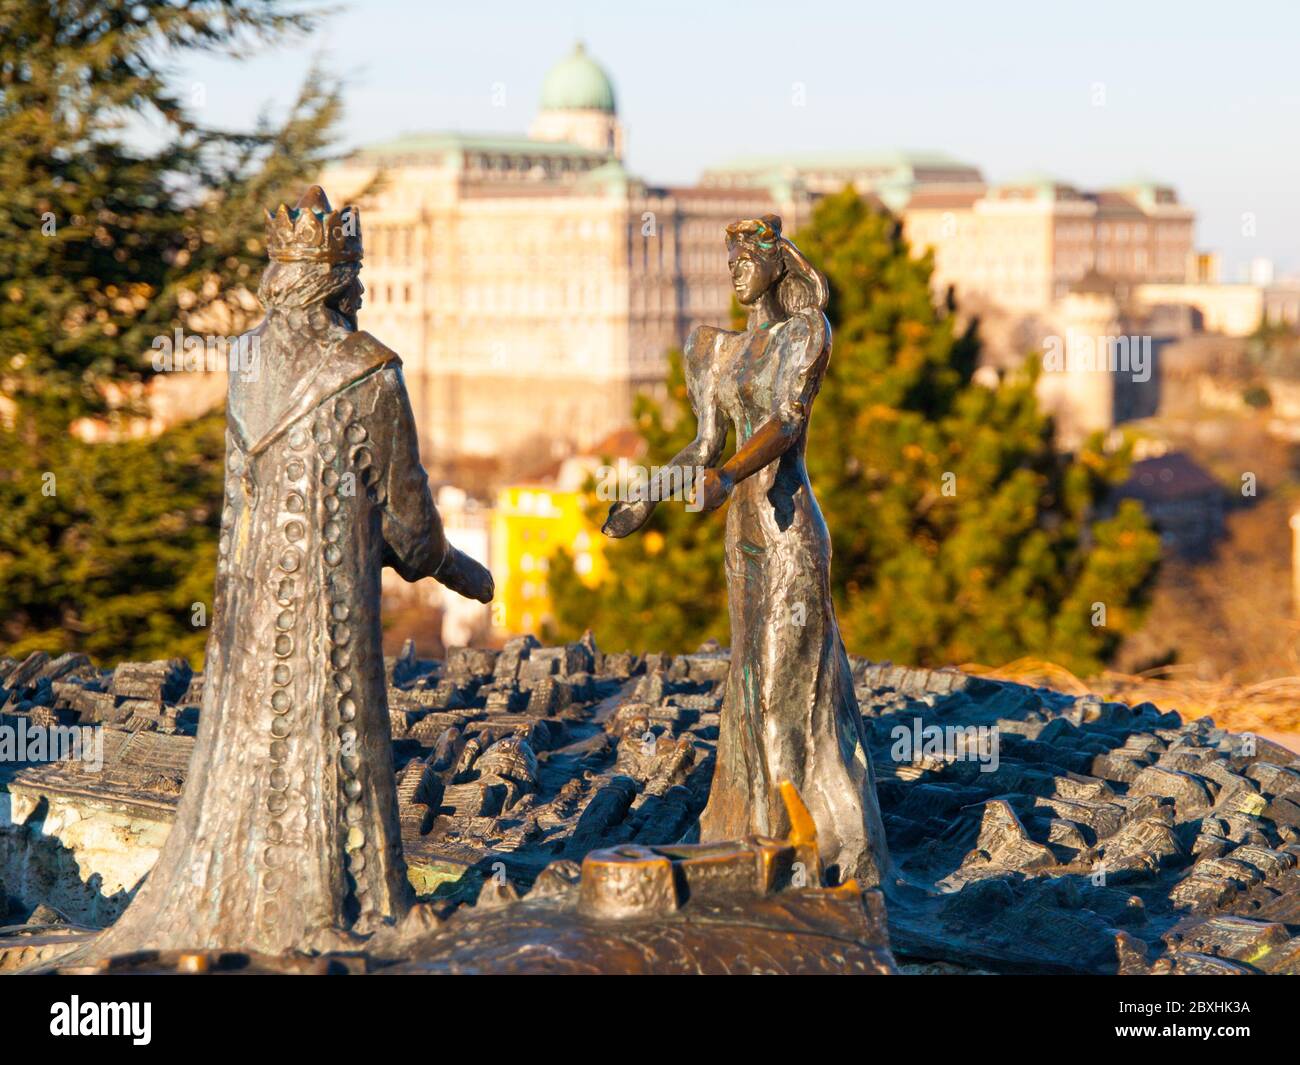 BUDAPEST, UNGHERIA - 3 DICEMBRE 2016: Statua di bronzo del re Buda e della regina Pest sulla collina di Gellert, Budapest, Ungheria Foto Stock